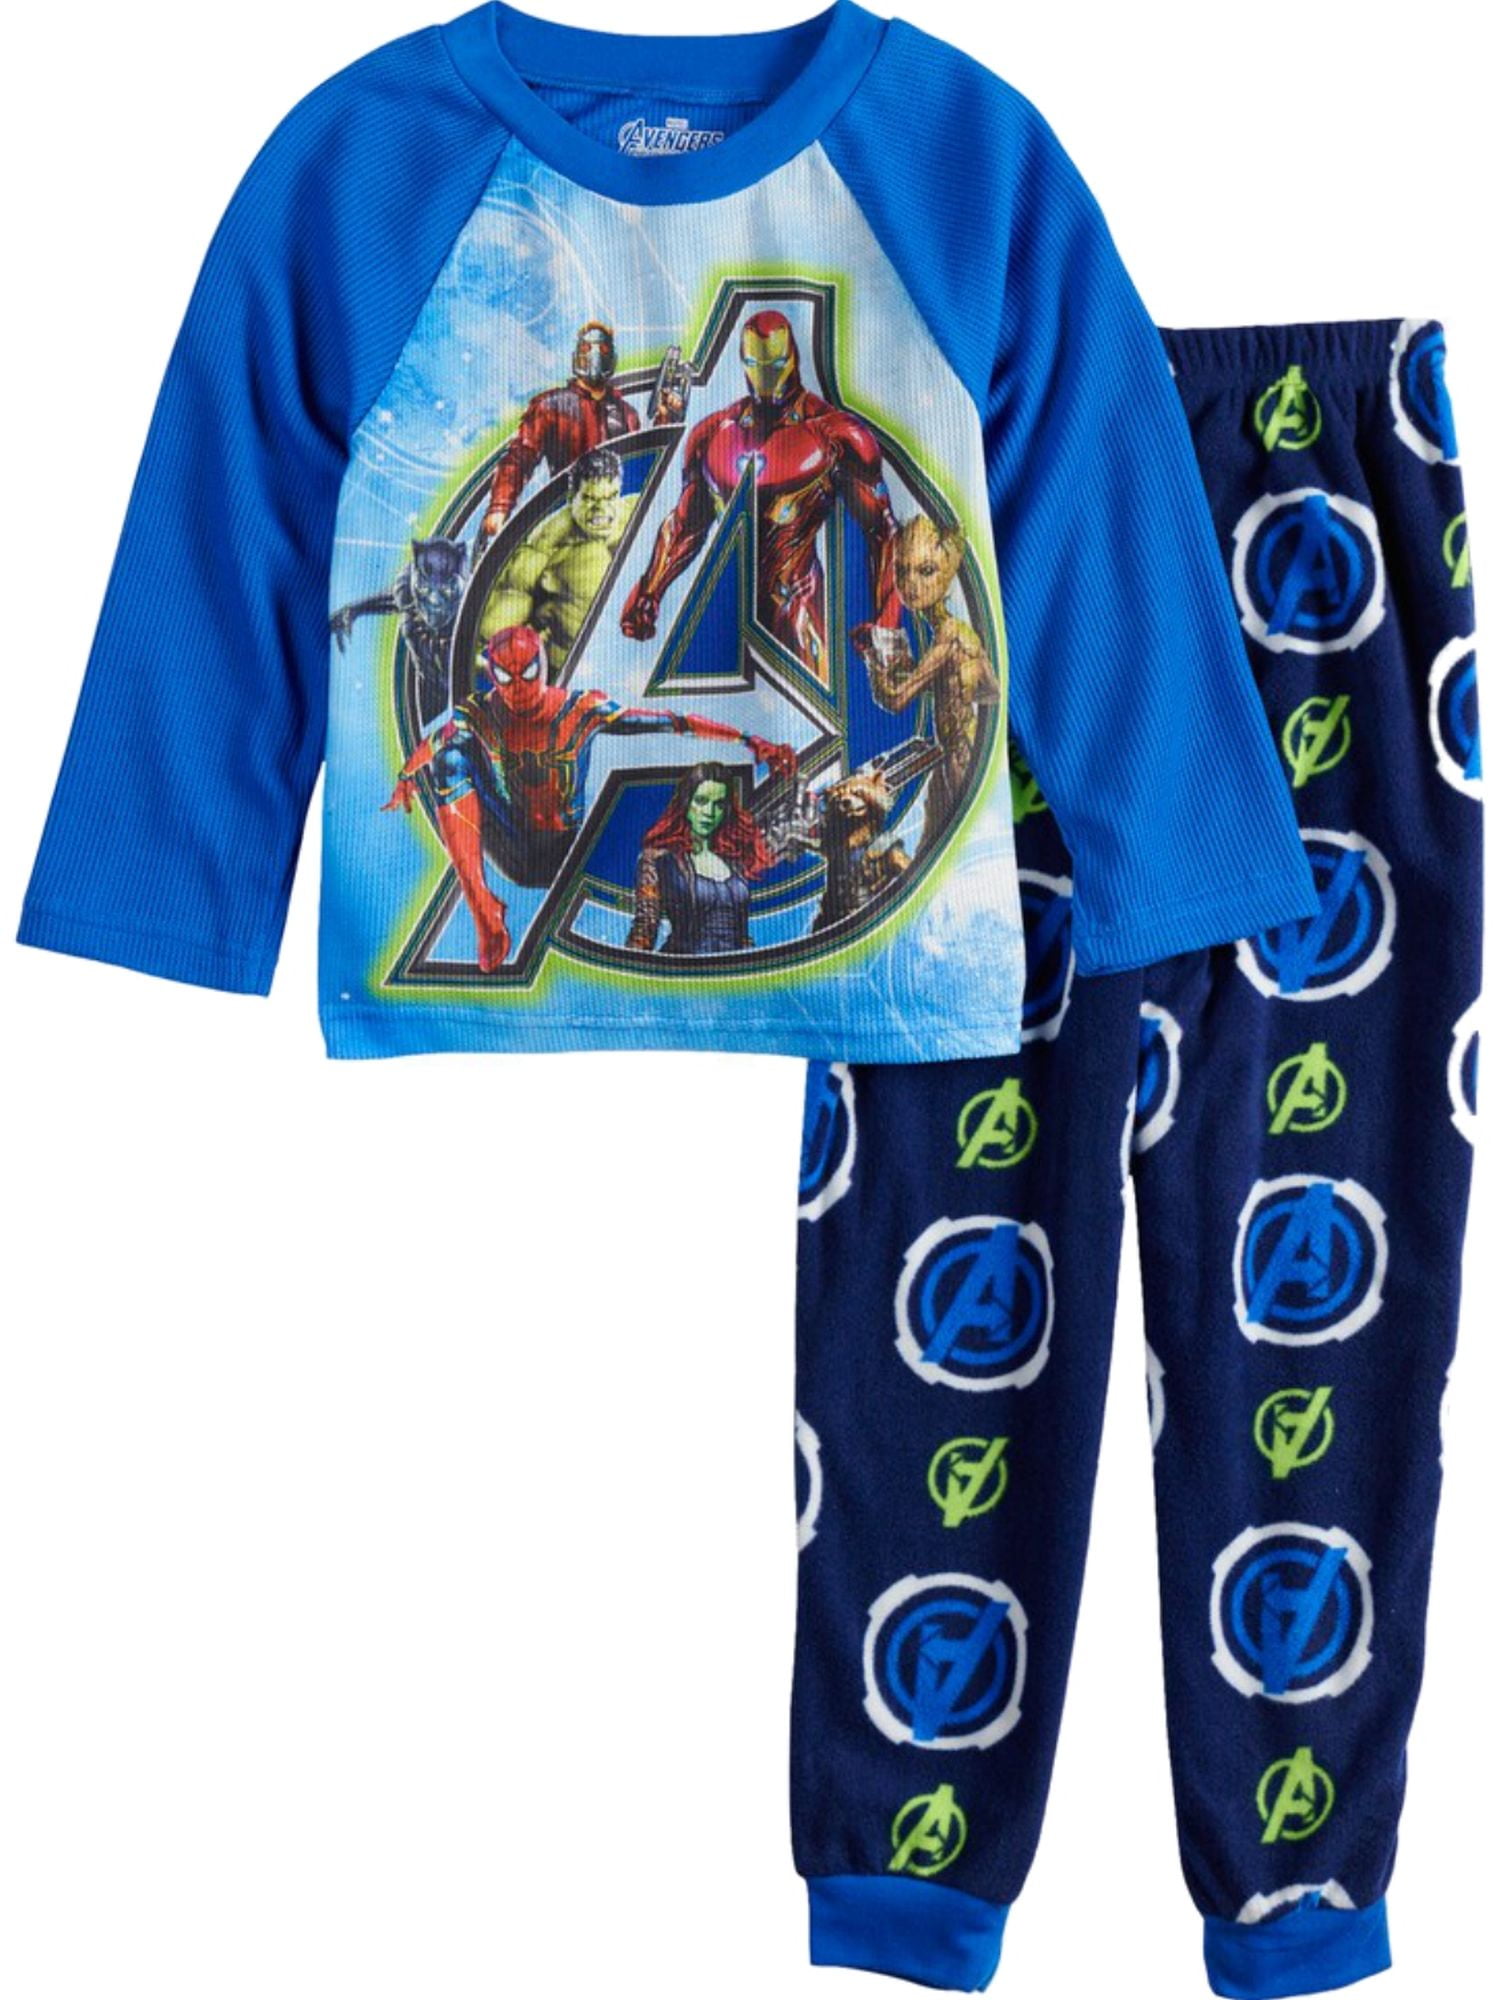 Marvel Avengers PyjamasKids Avengers PJsAvengers Pyjama Set 